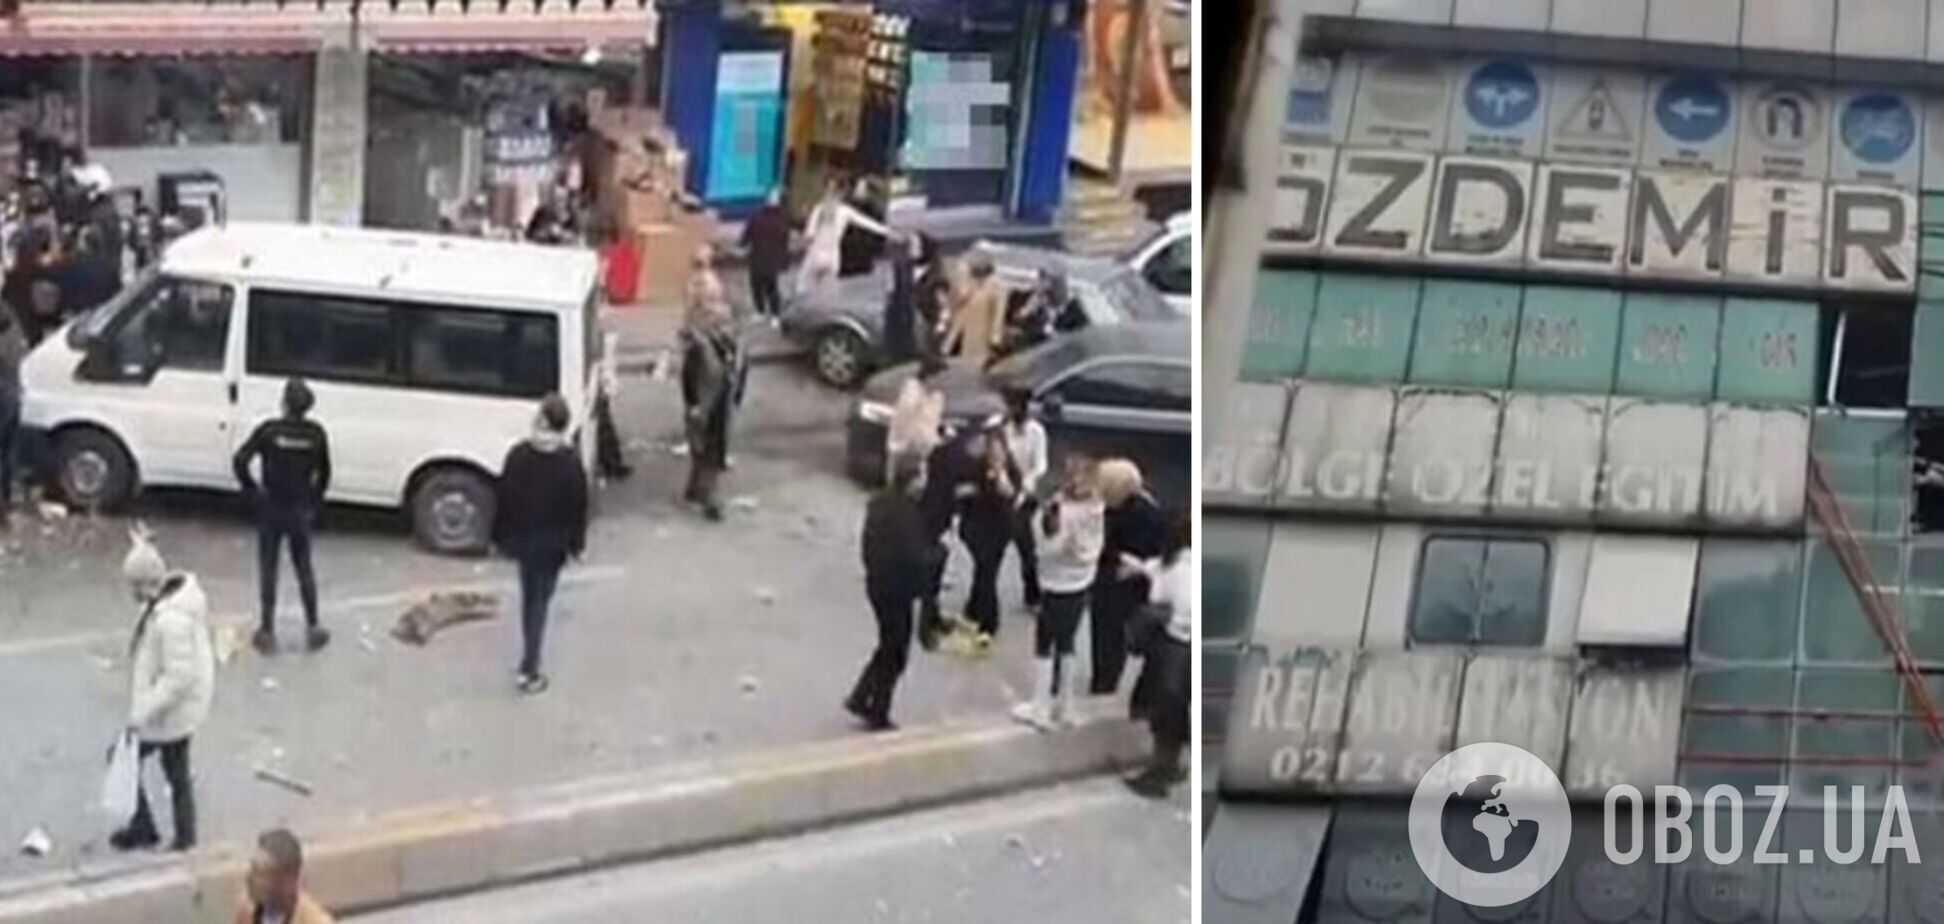 В Стамбуле раздался взрыв: есть пострадавшие, на месте работают спасатели. Фото и видео